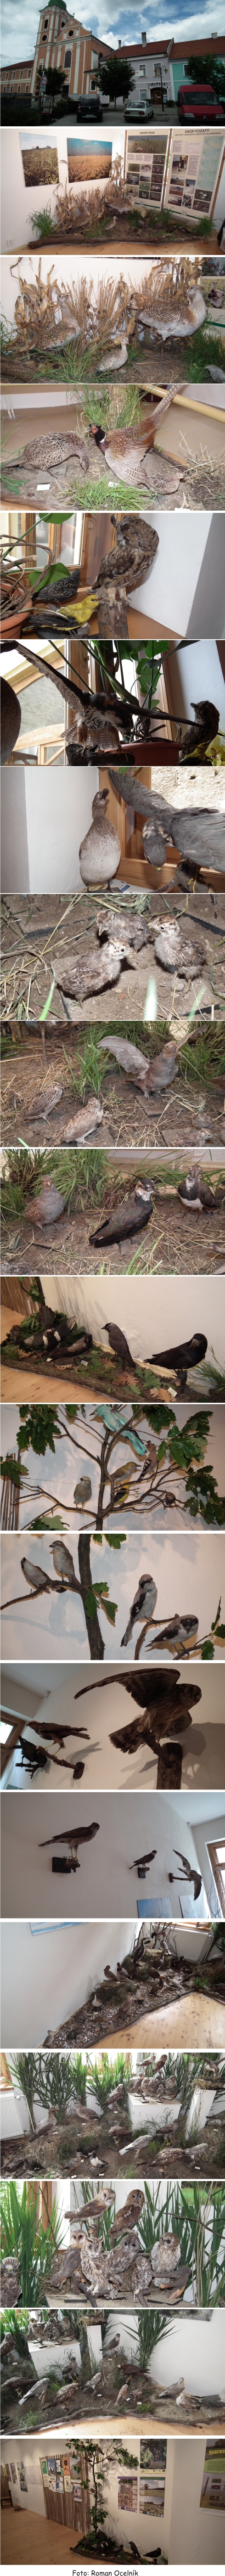 Výstava vtáctva Podunajska